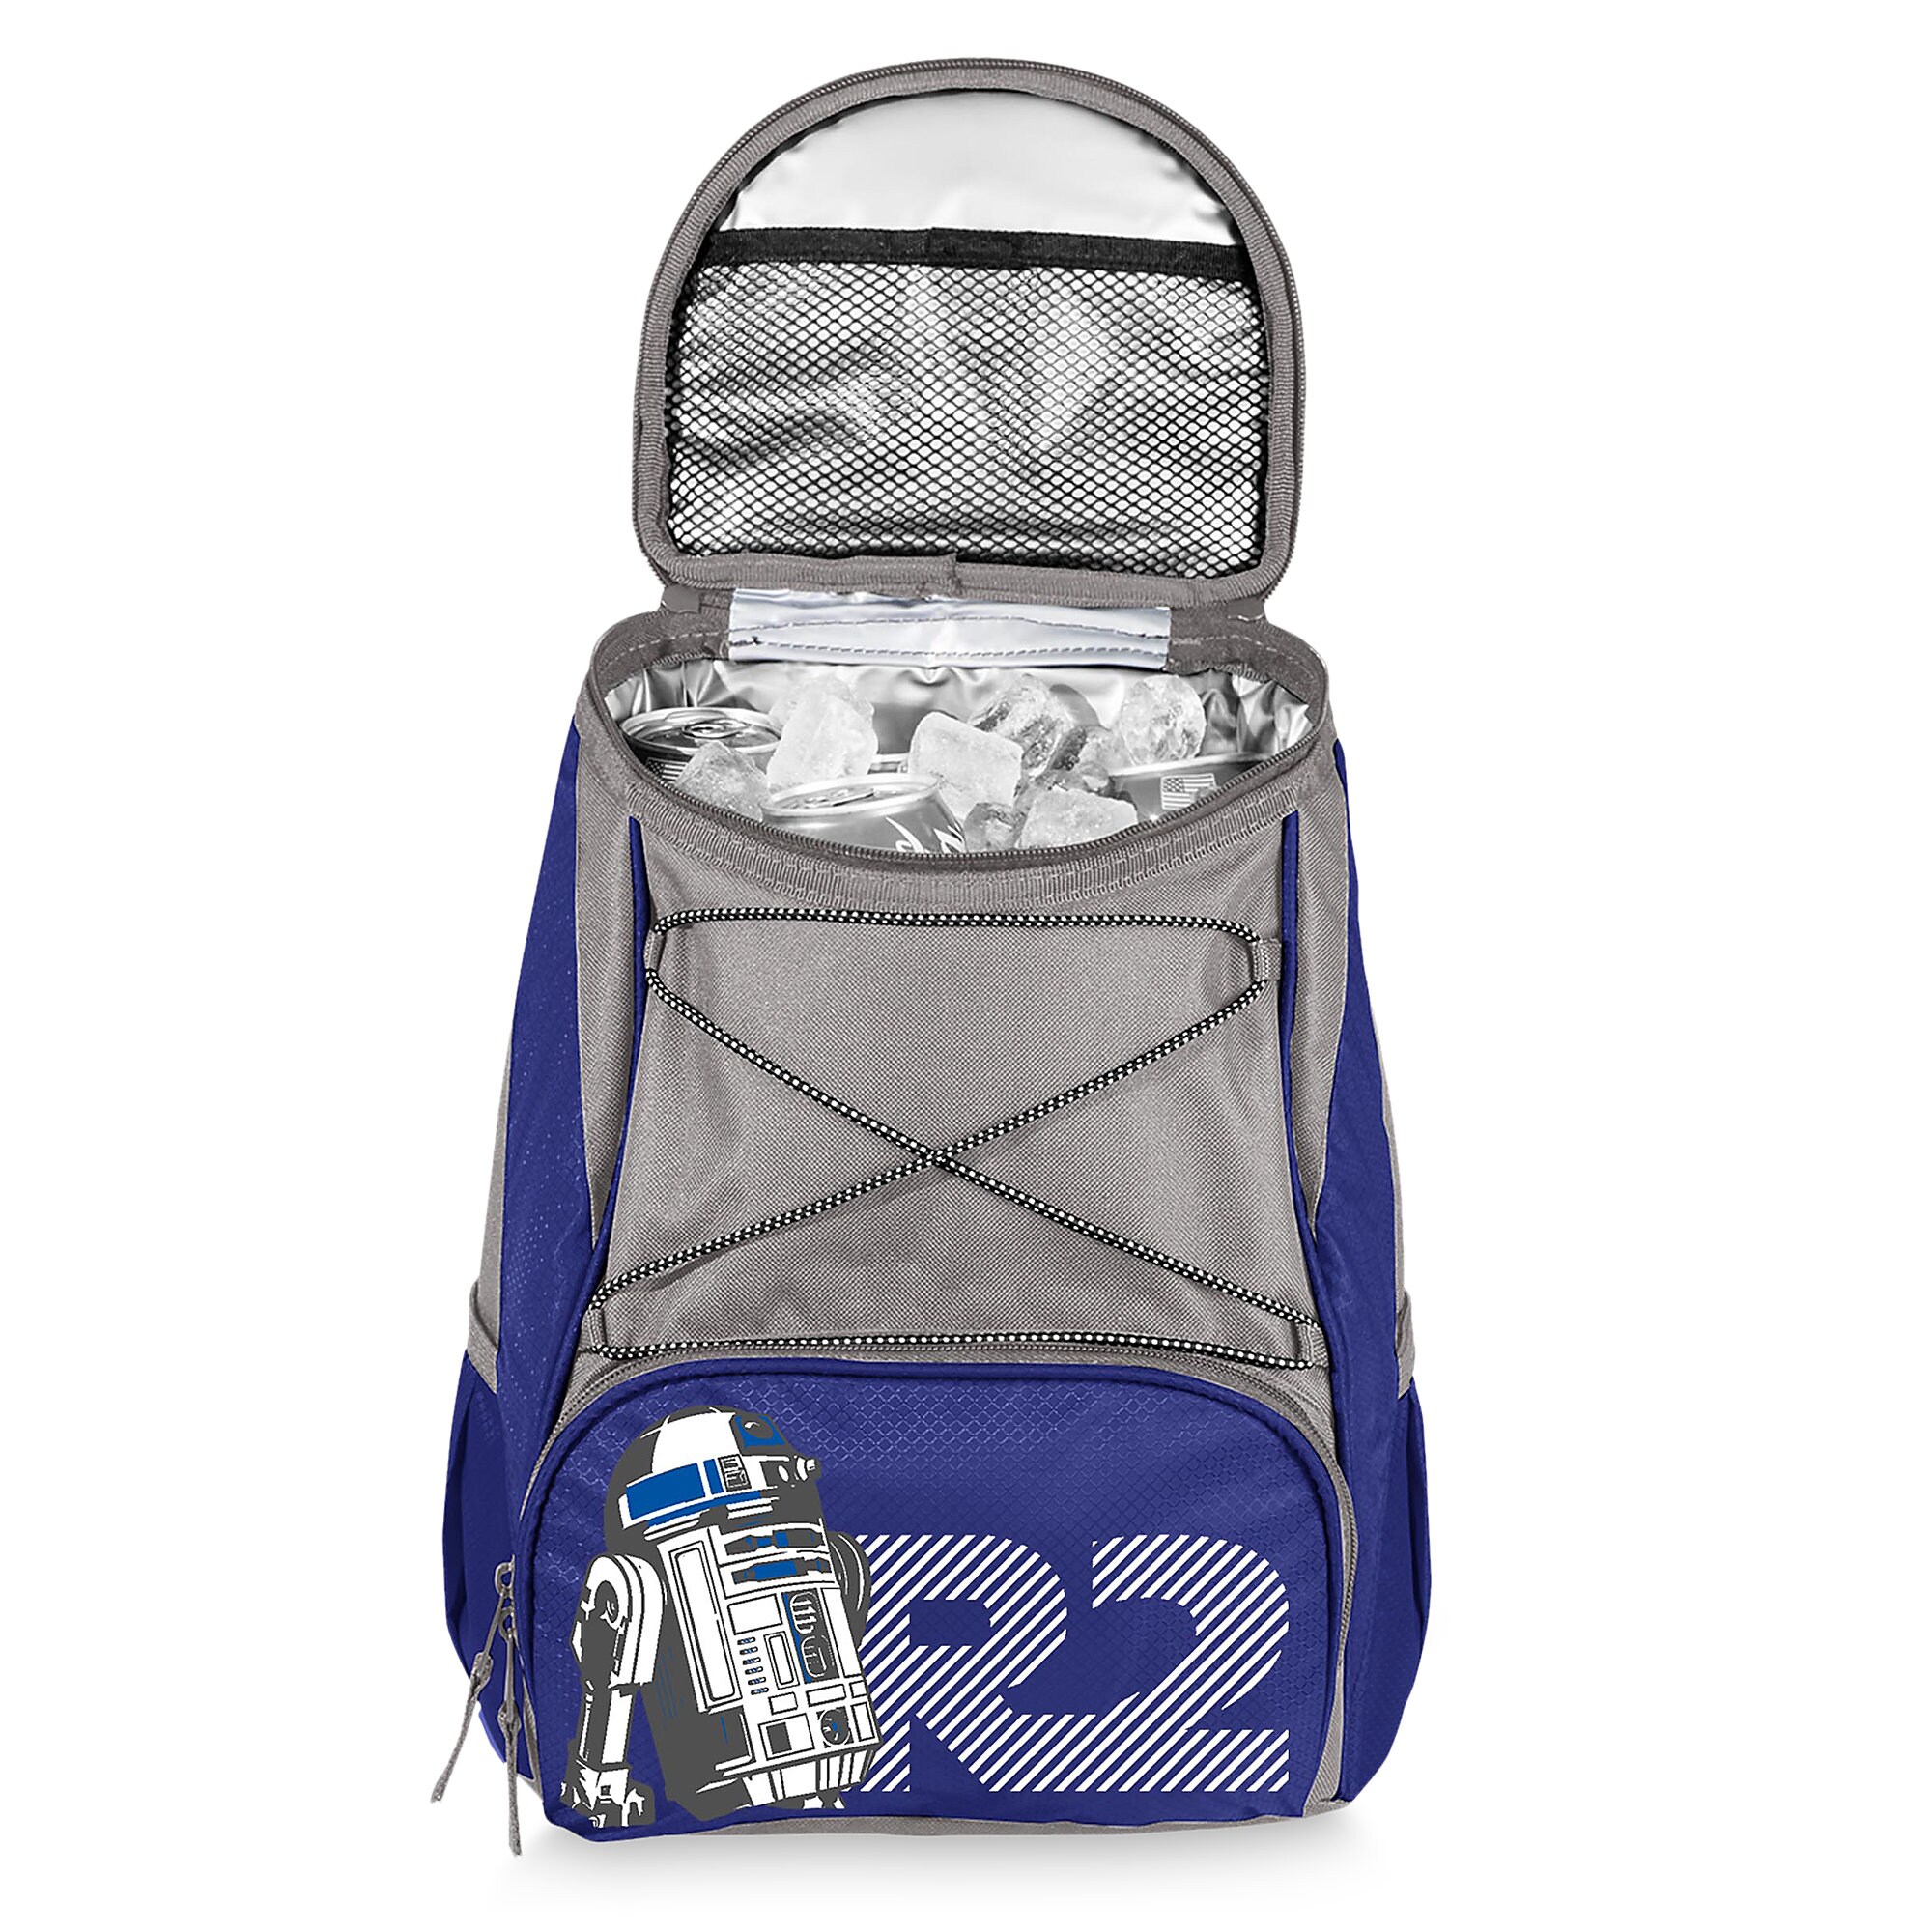 R2-D2 Cooler Backpack